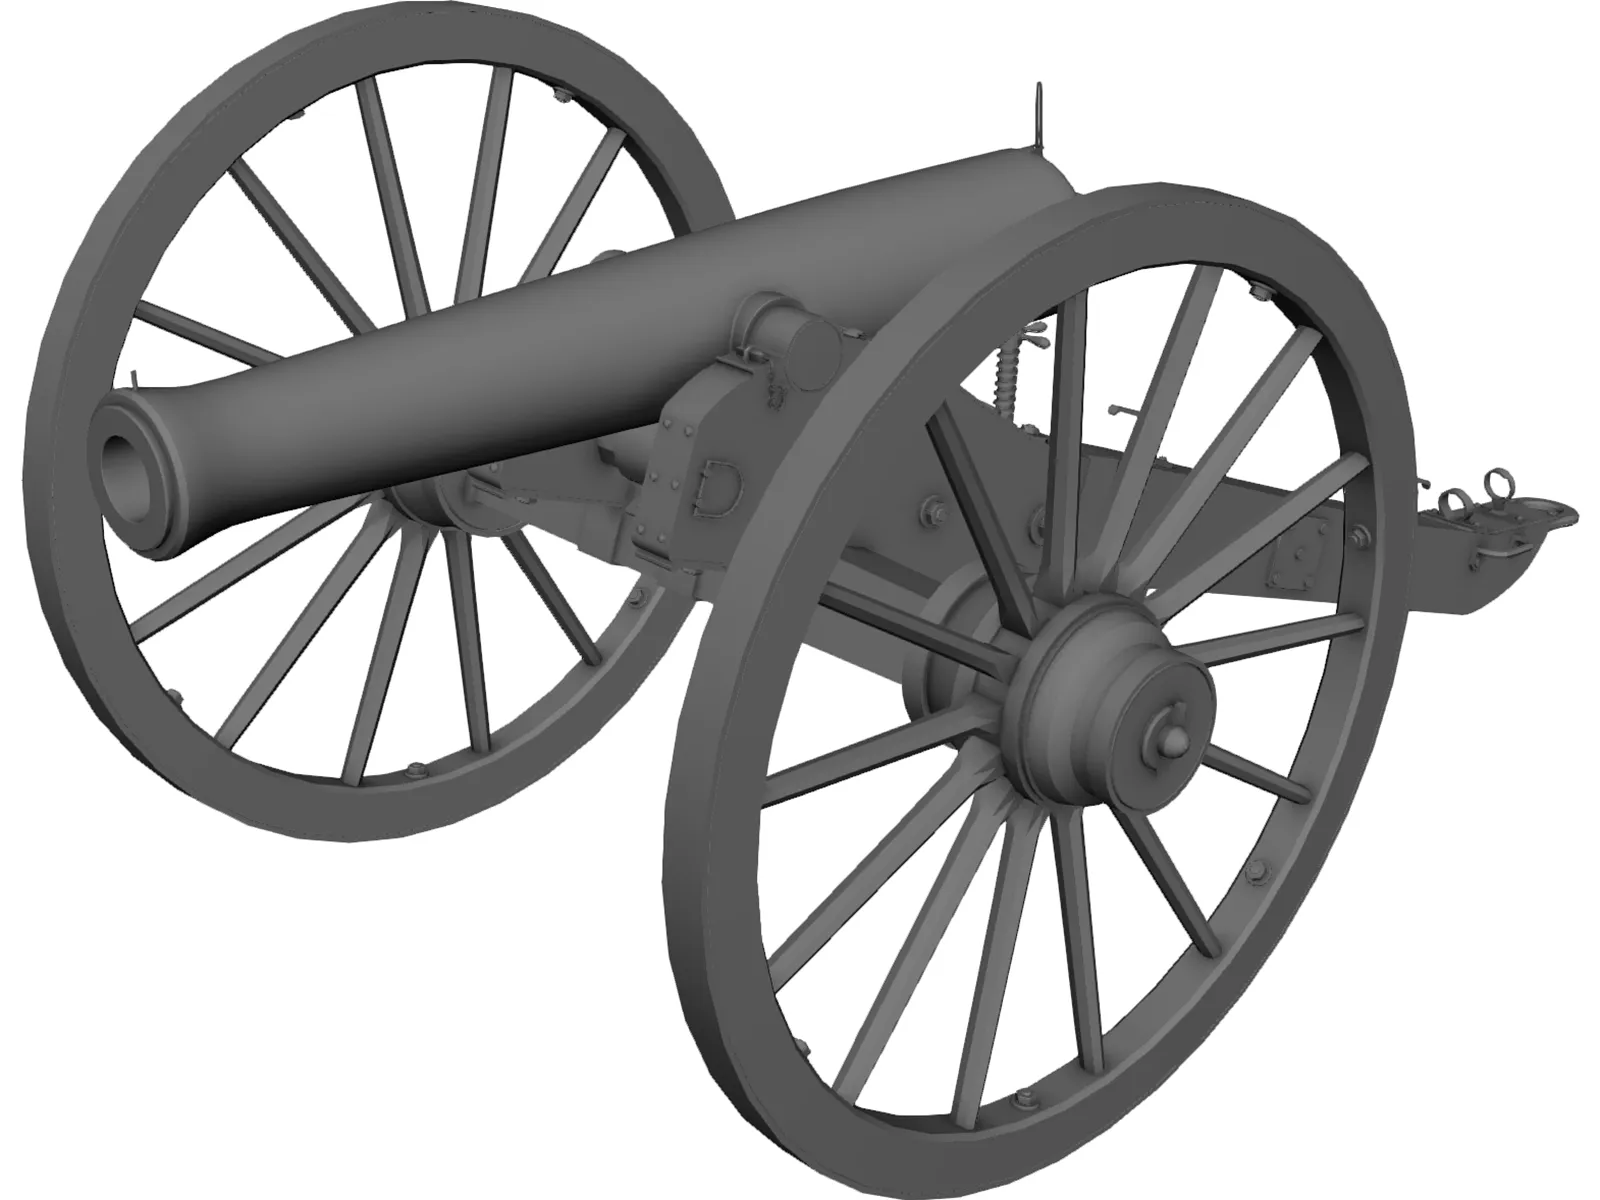 Napolean Cannon 3D Model